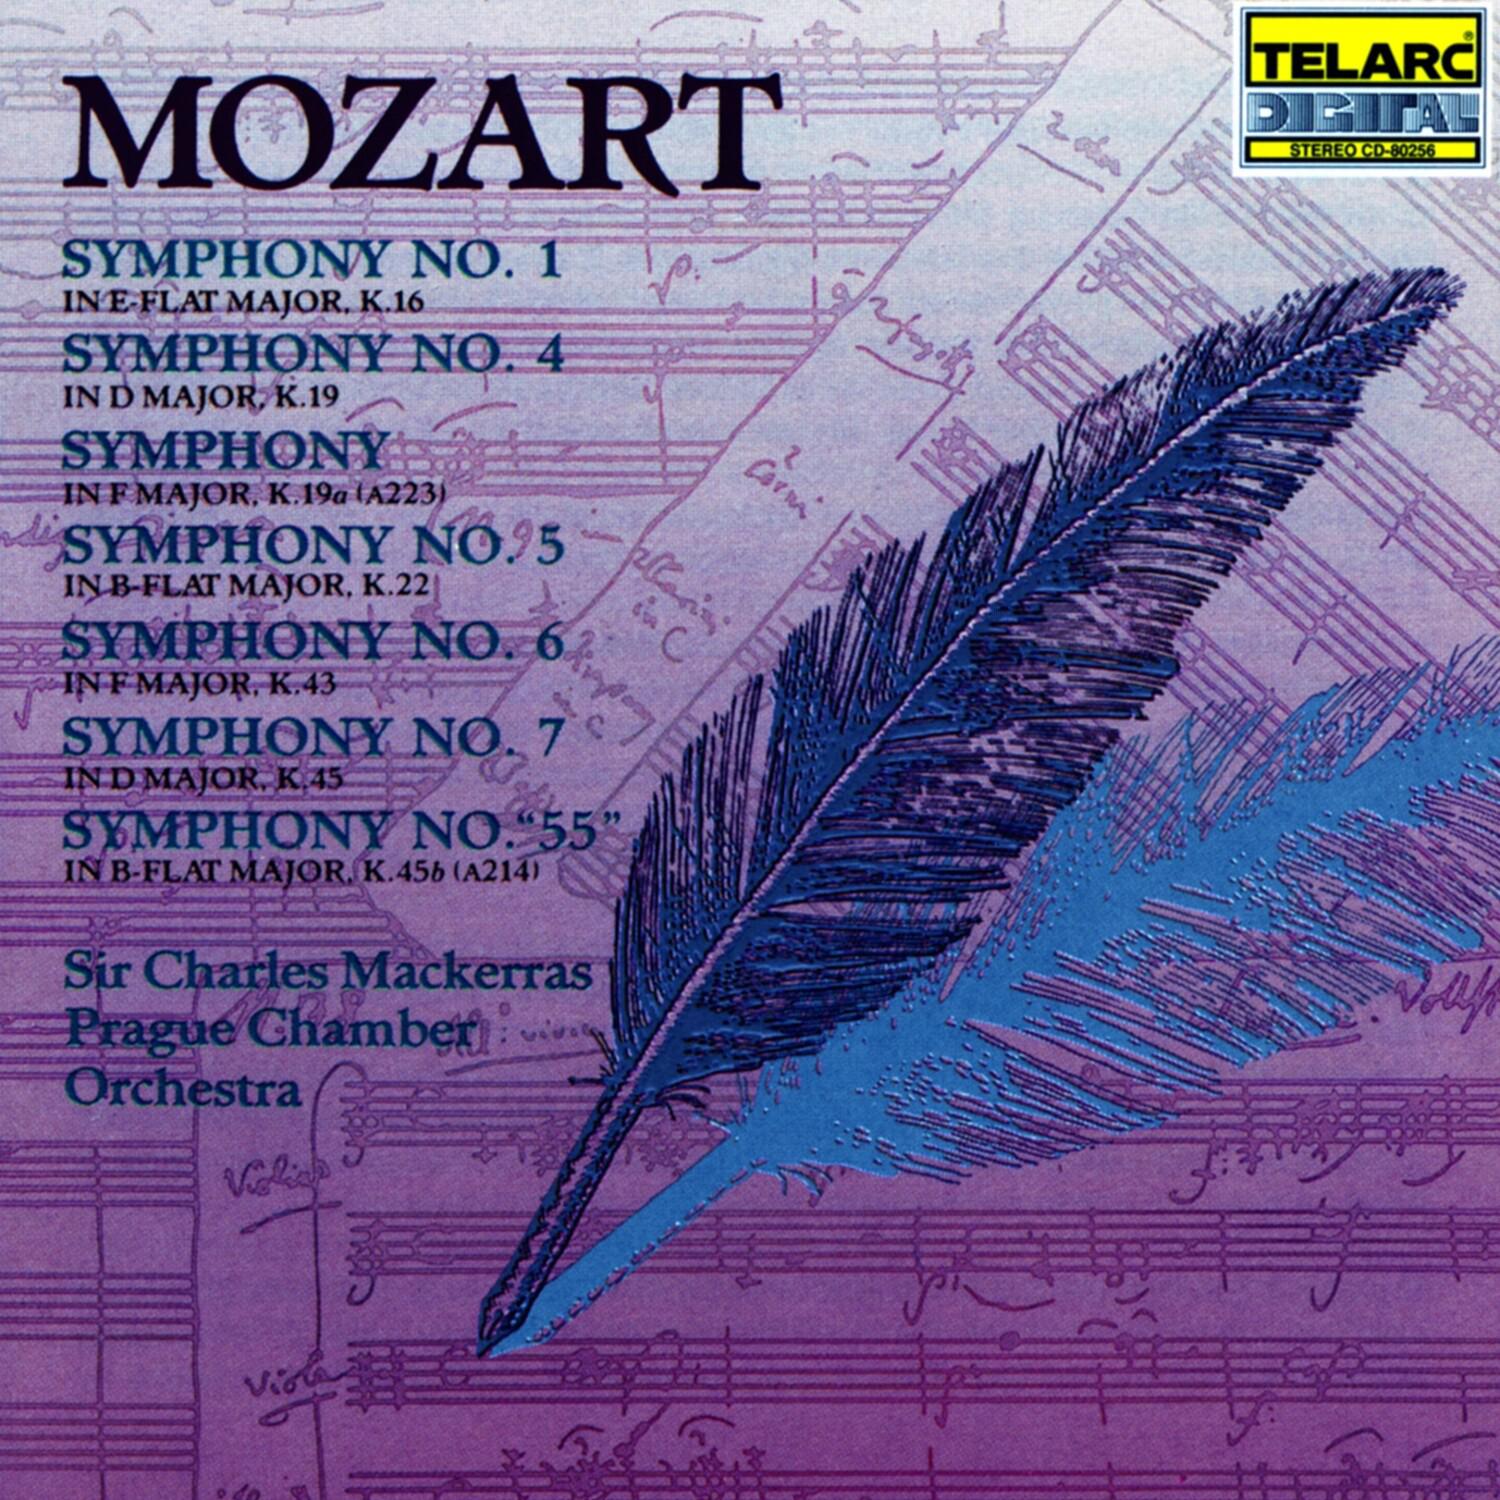 Symphony No. 4 in D major, K.19: I. Allegro